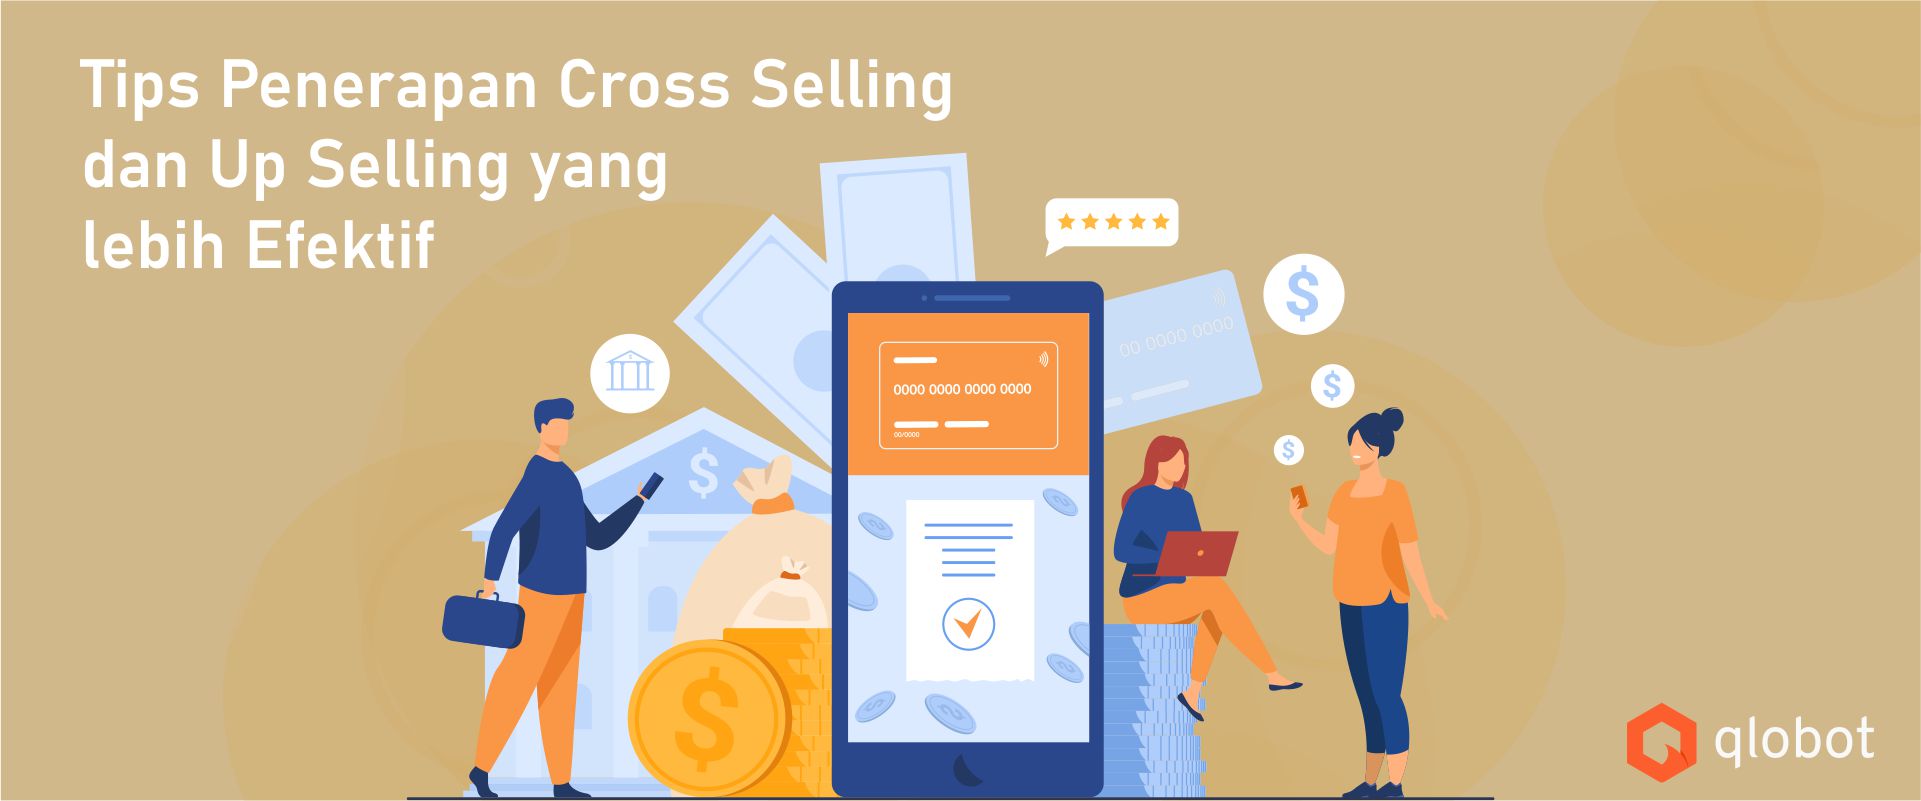 Tips Penerapan Cross Selling dan Up Selling